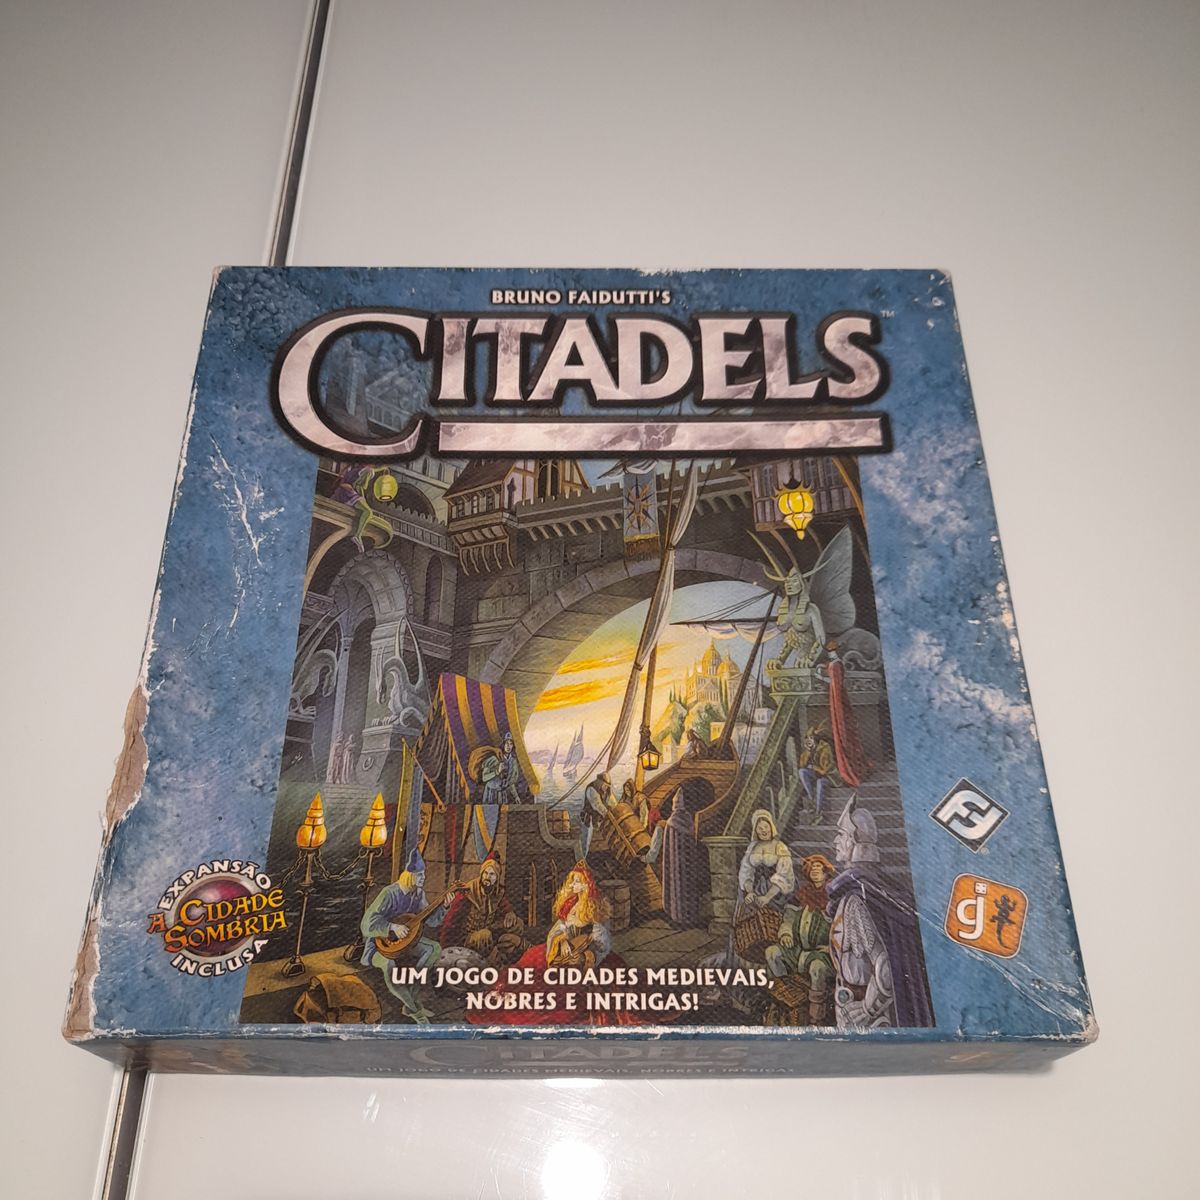 Citadels (2ª Edição Revisada) Jogo de Tabuleiro